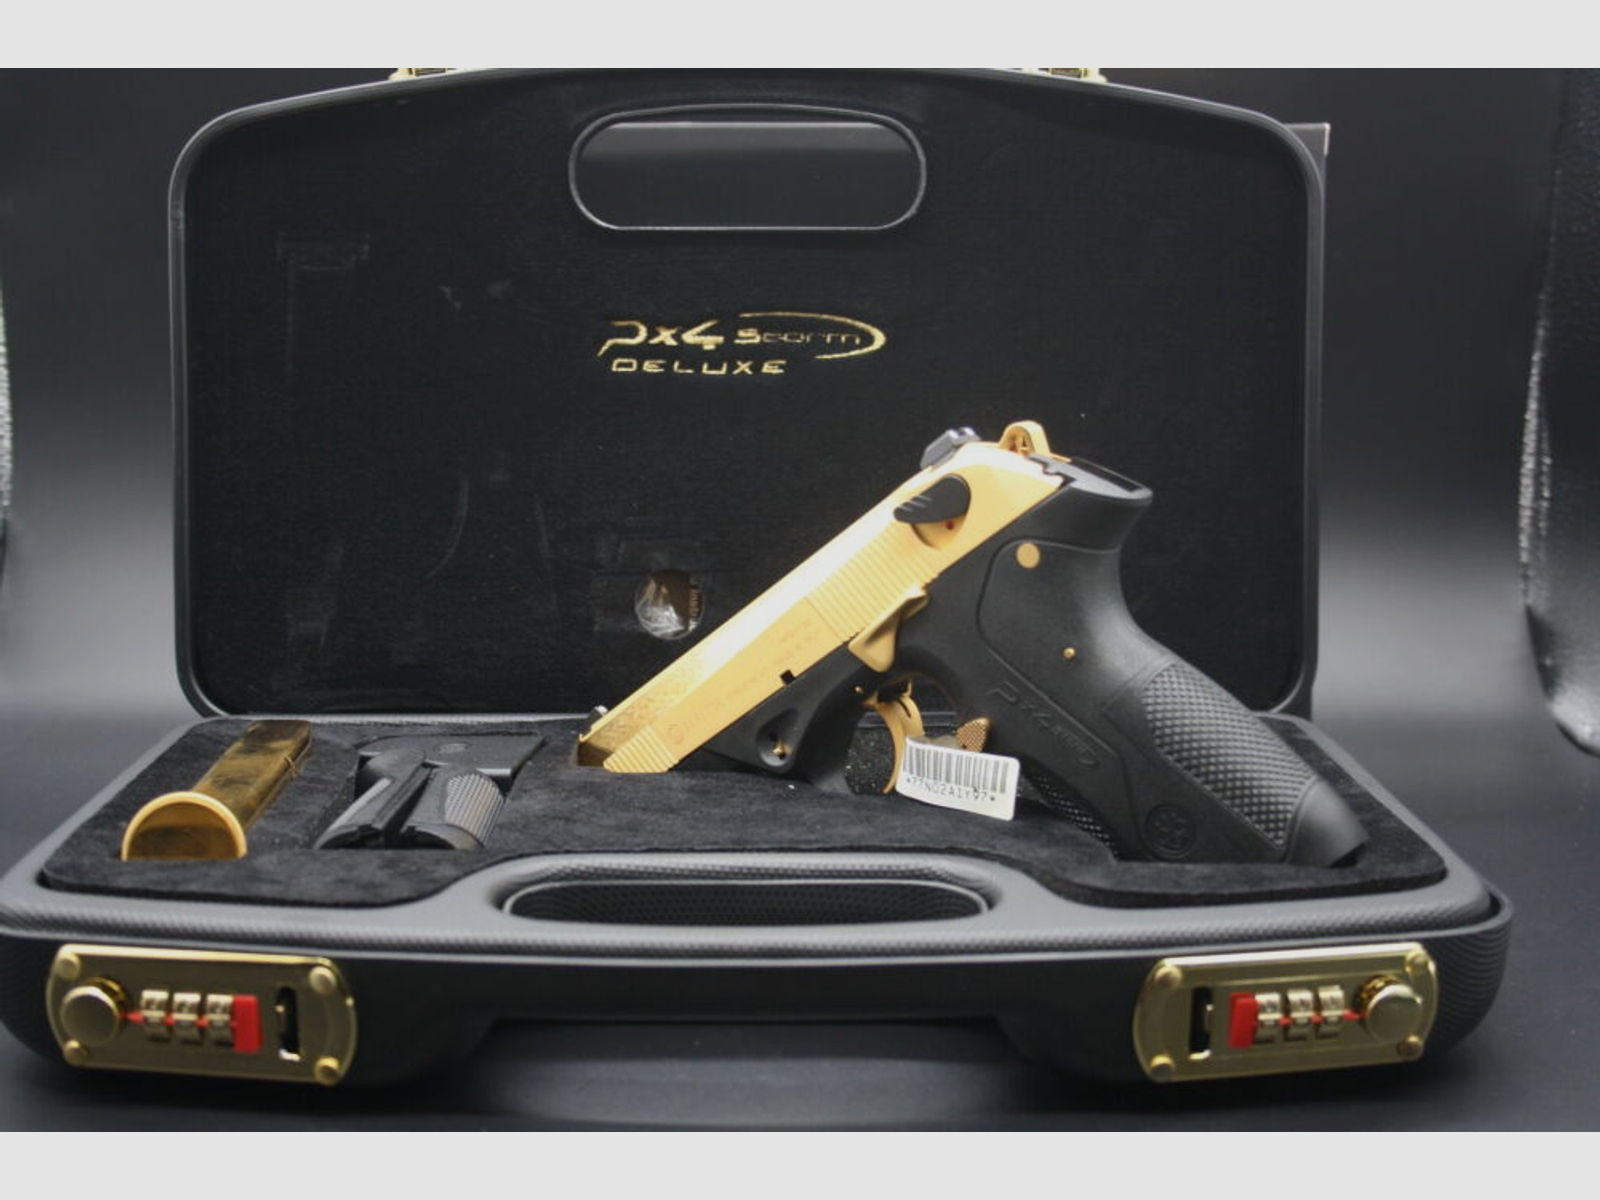 Beretta PX4 Storm de Luxe Gold NEUWAFFE 3 am Lager	 PX4 Storm de Luxe